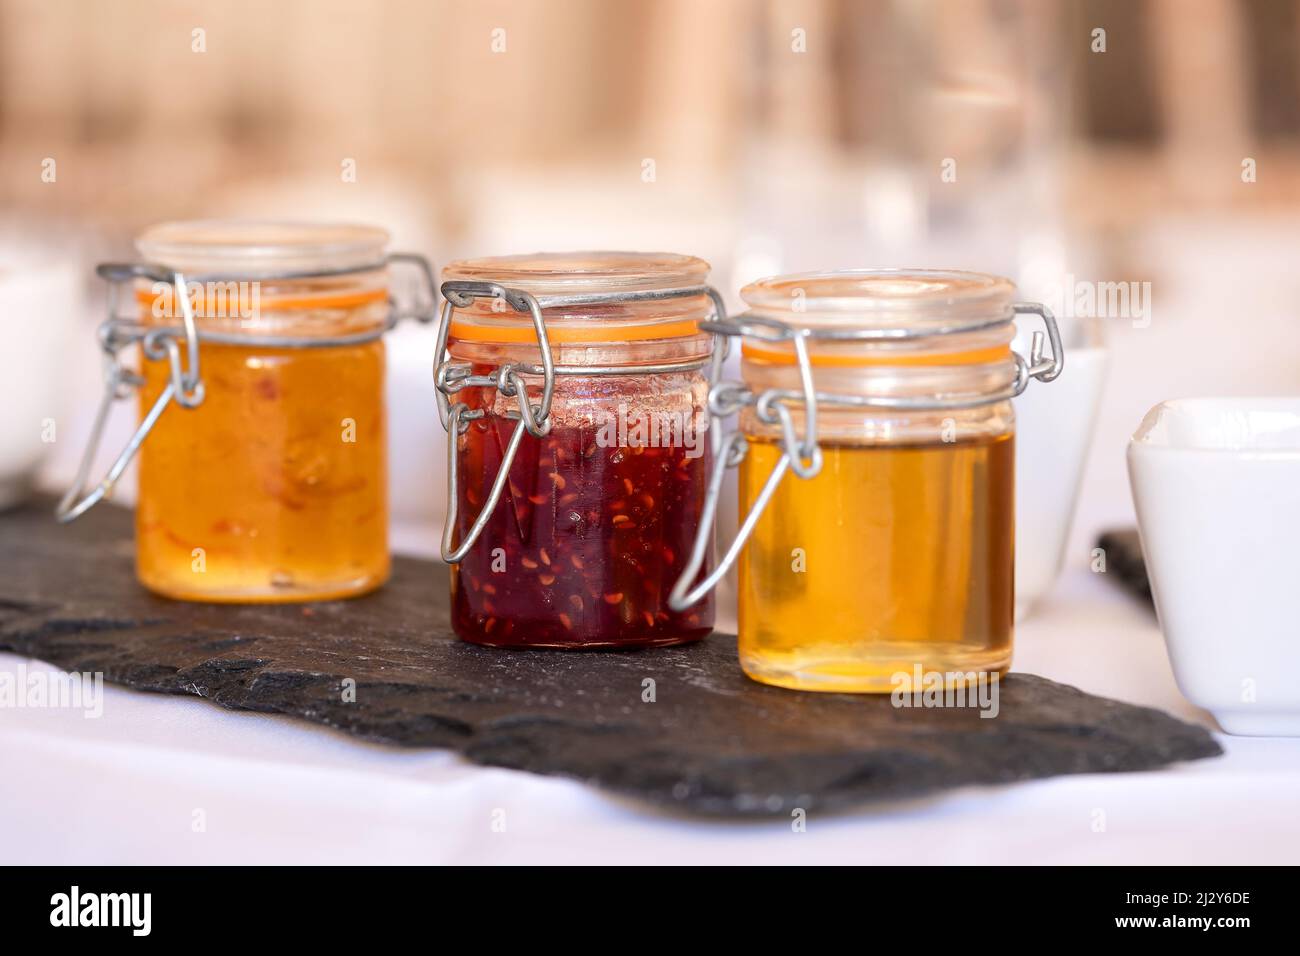 Drei Konservendosen für Toast oder Croissants in kleinen Gläsern auf einem Frühstückstisch. Die Gläser enthalten Honig, Marmelade und Erdbeermarmelade. Stockfoto